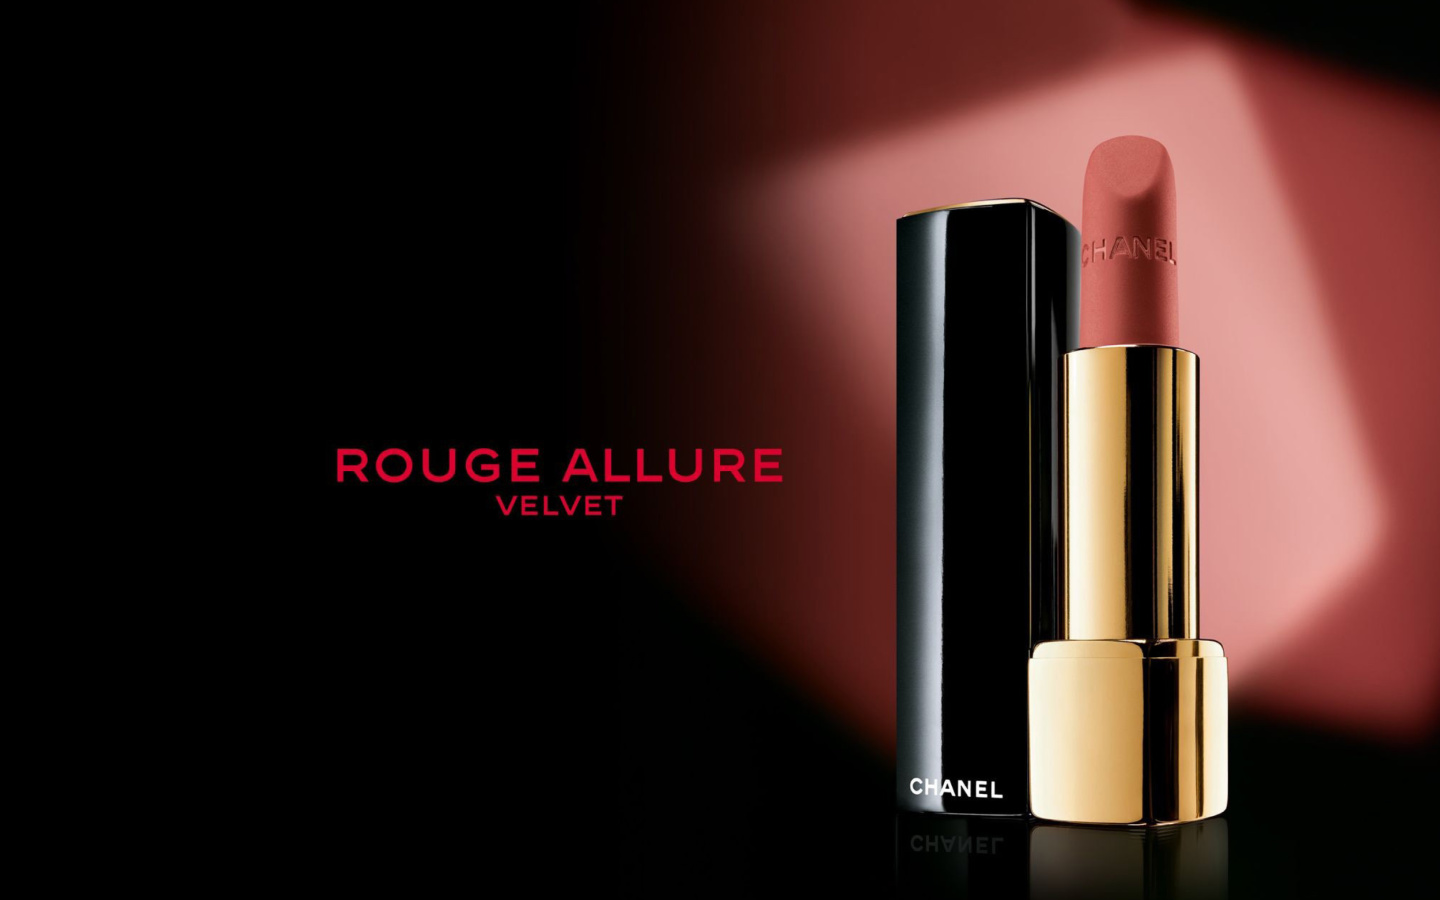 Das Chanel Rouge Allure Velvet Wallpaper 1440x900